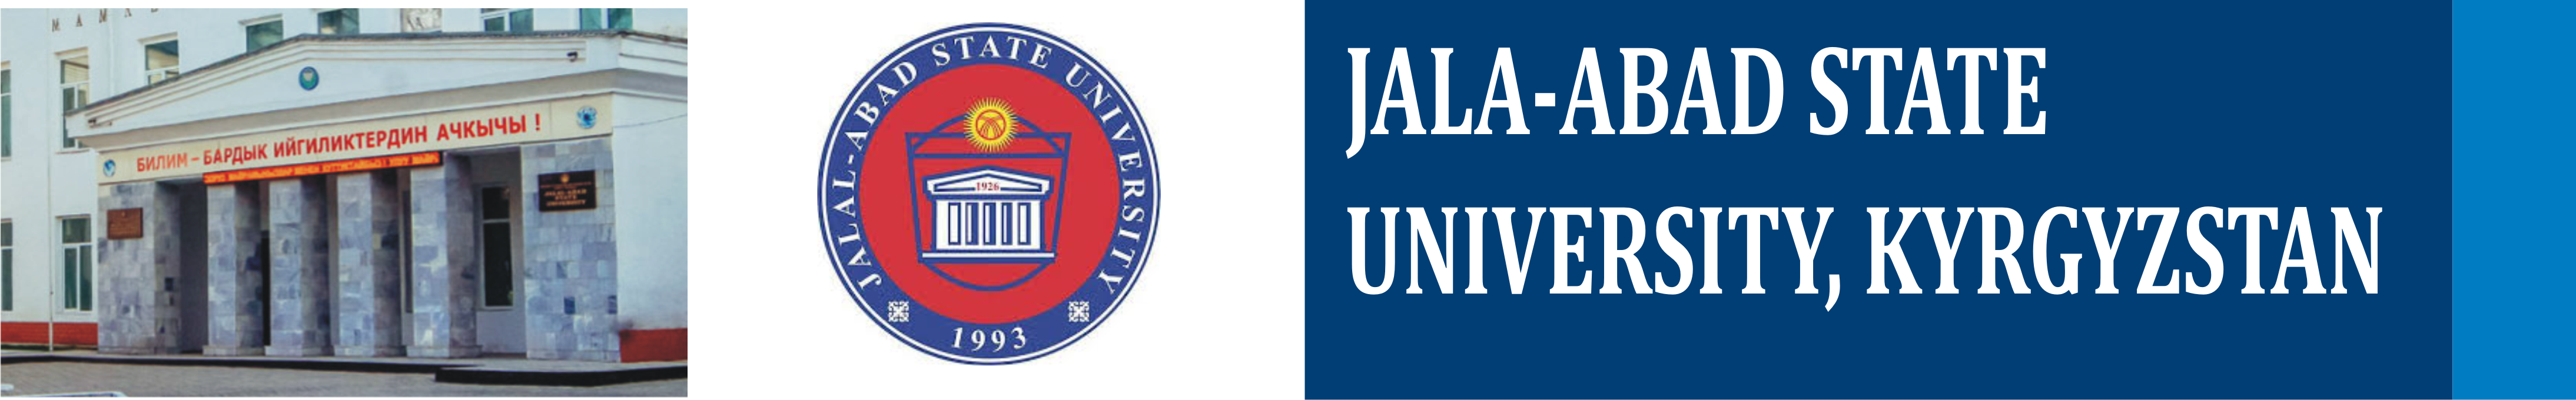 jalalabad state university